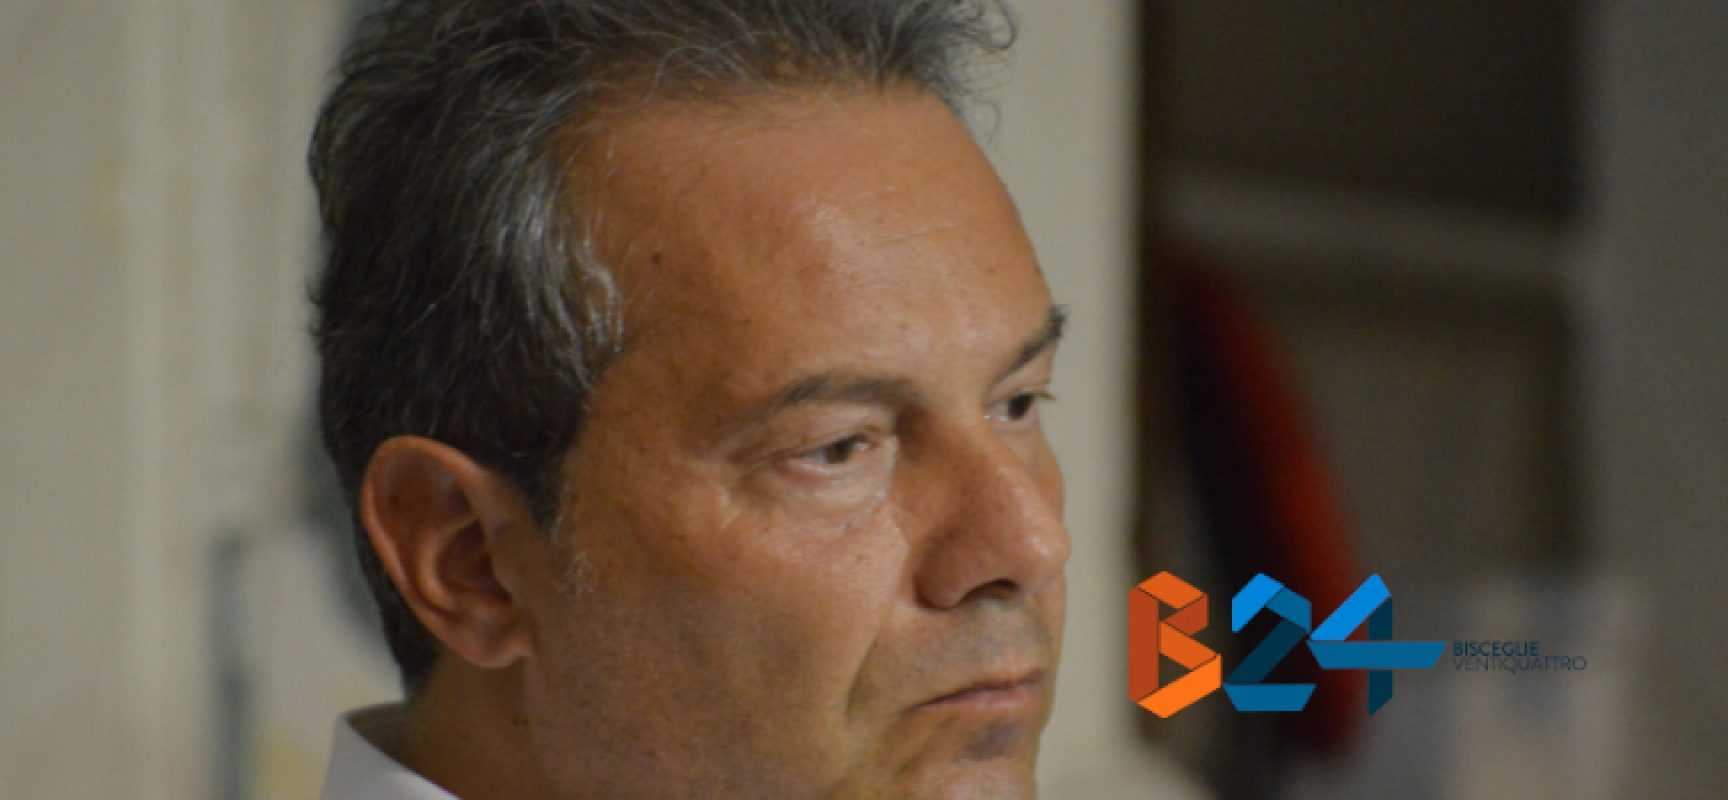 Francesco Spina: “Presentato ricorso al Tar per scongiurare aumento Tari 2019”